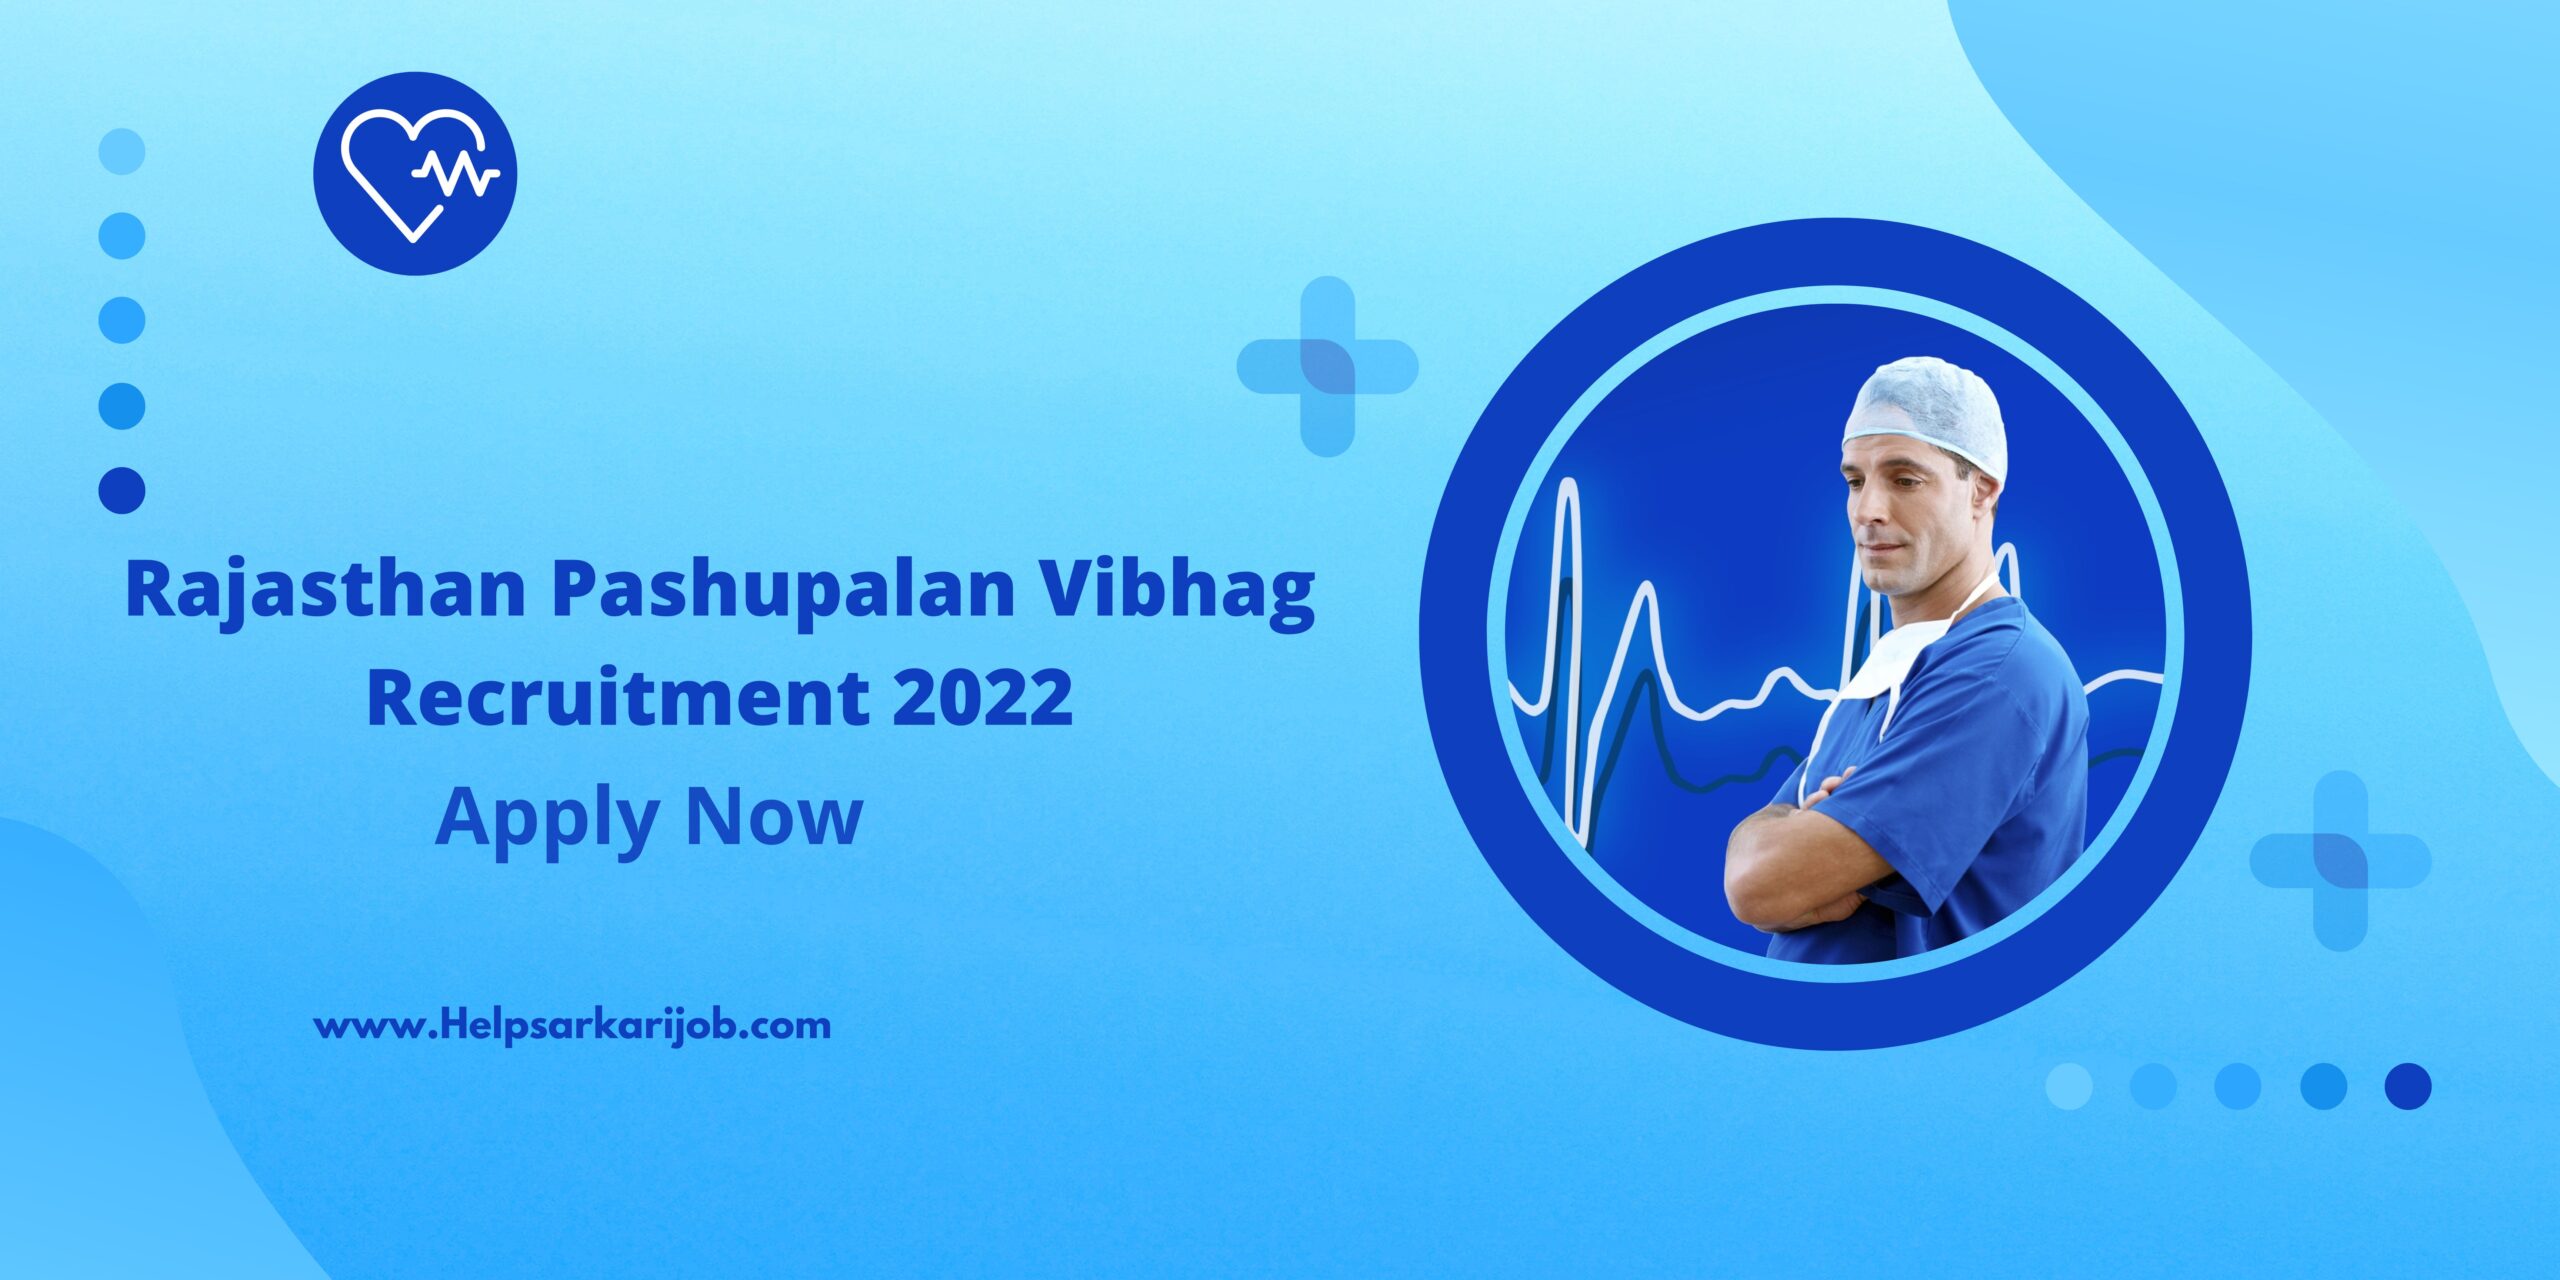 Rajasthan Pashupalan Vibhag Recruitment 2022